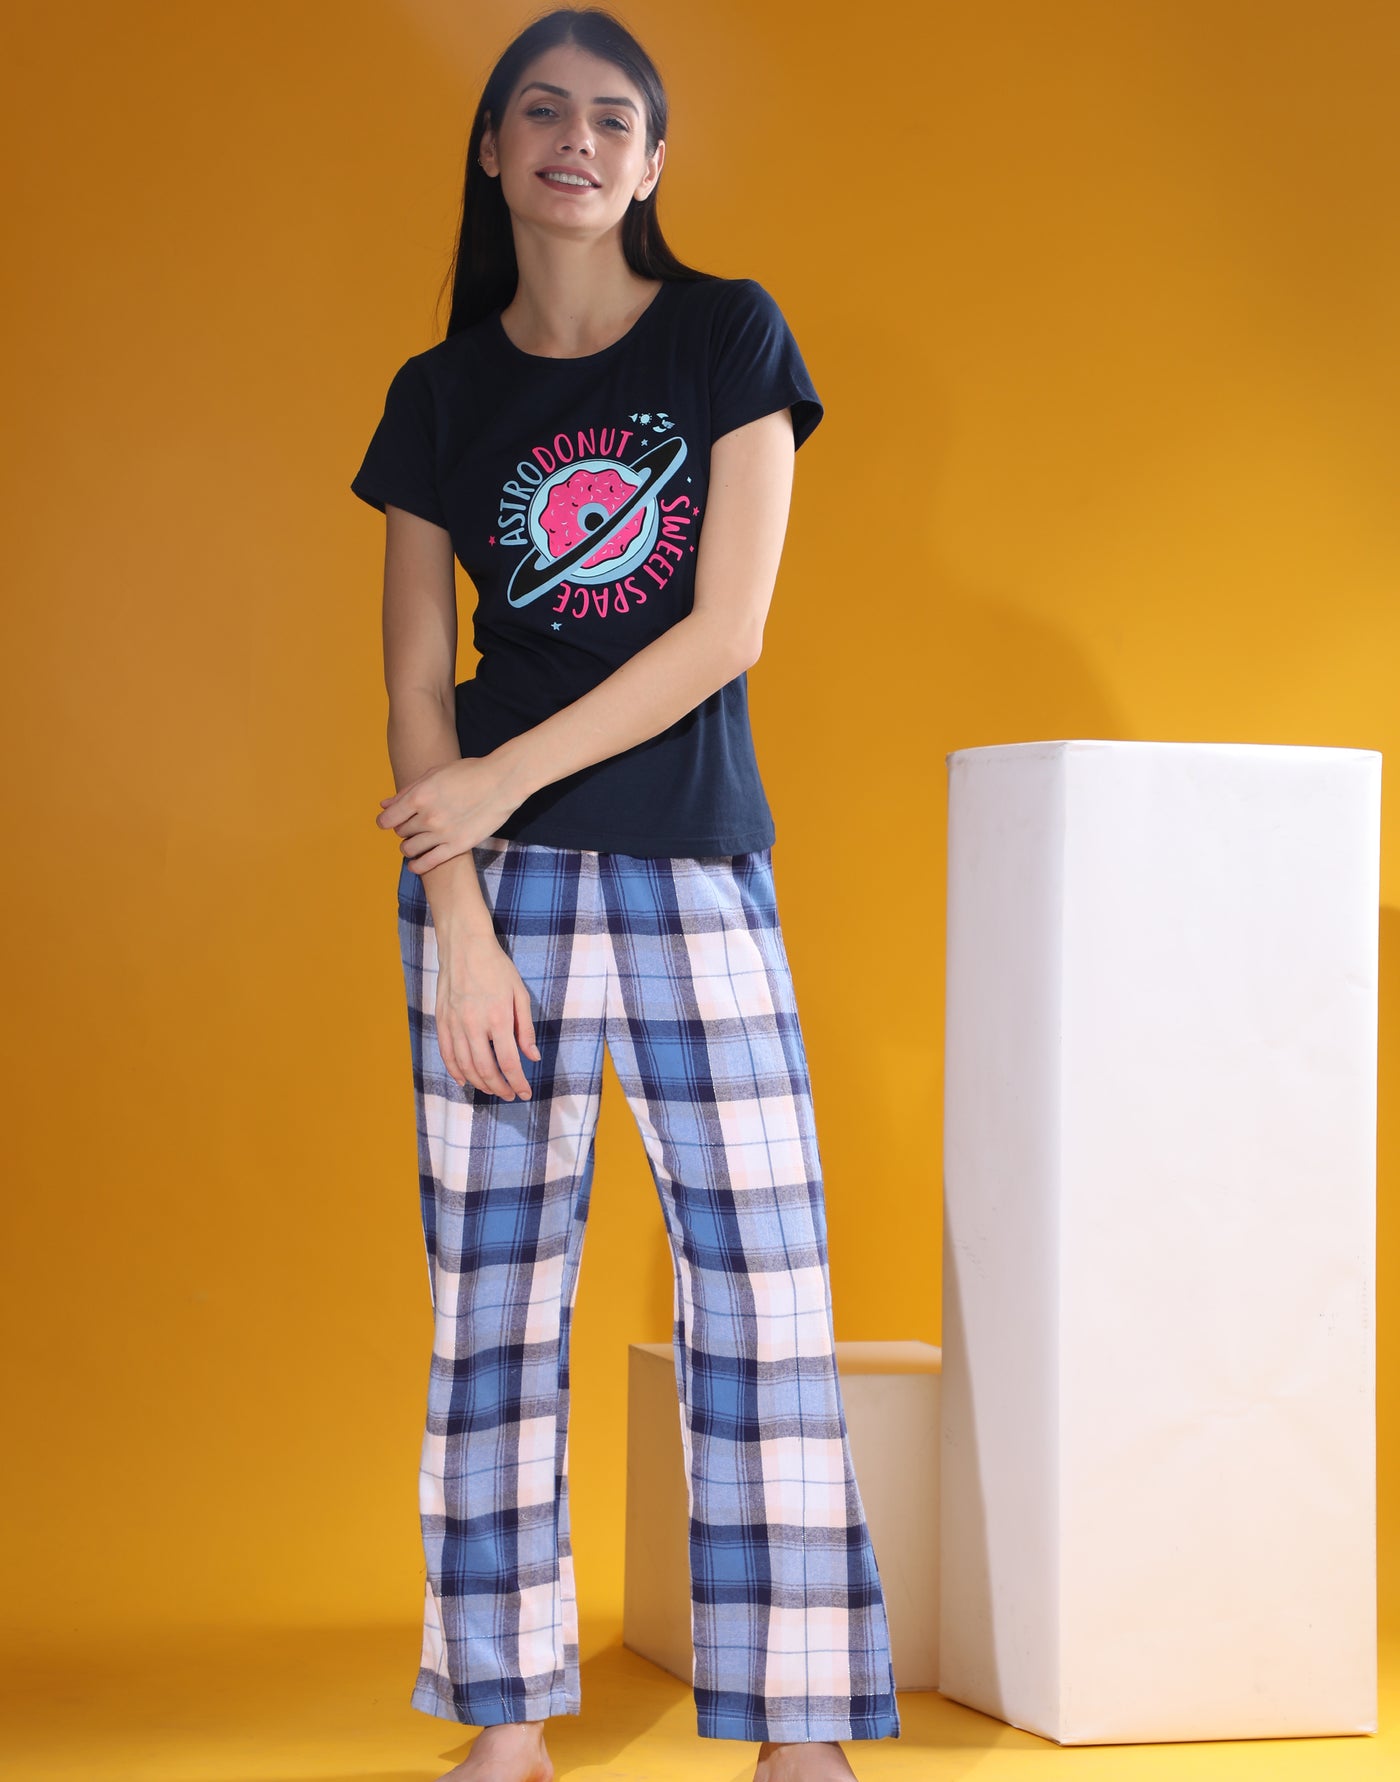 Pyjama Set for Women-Astrodonut Print